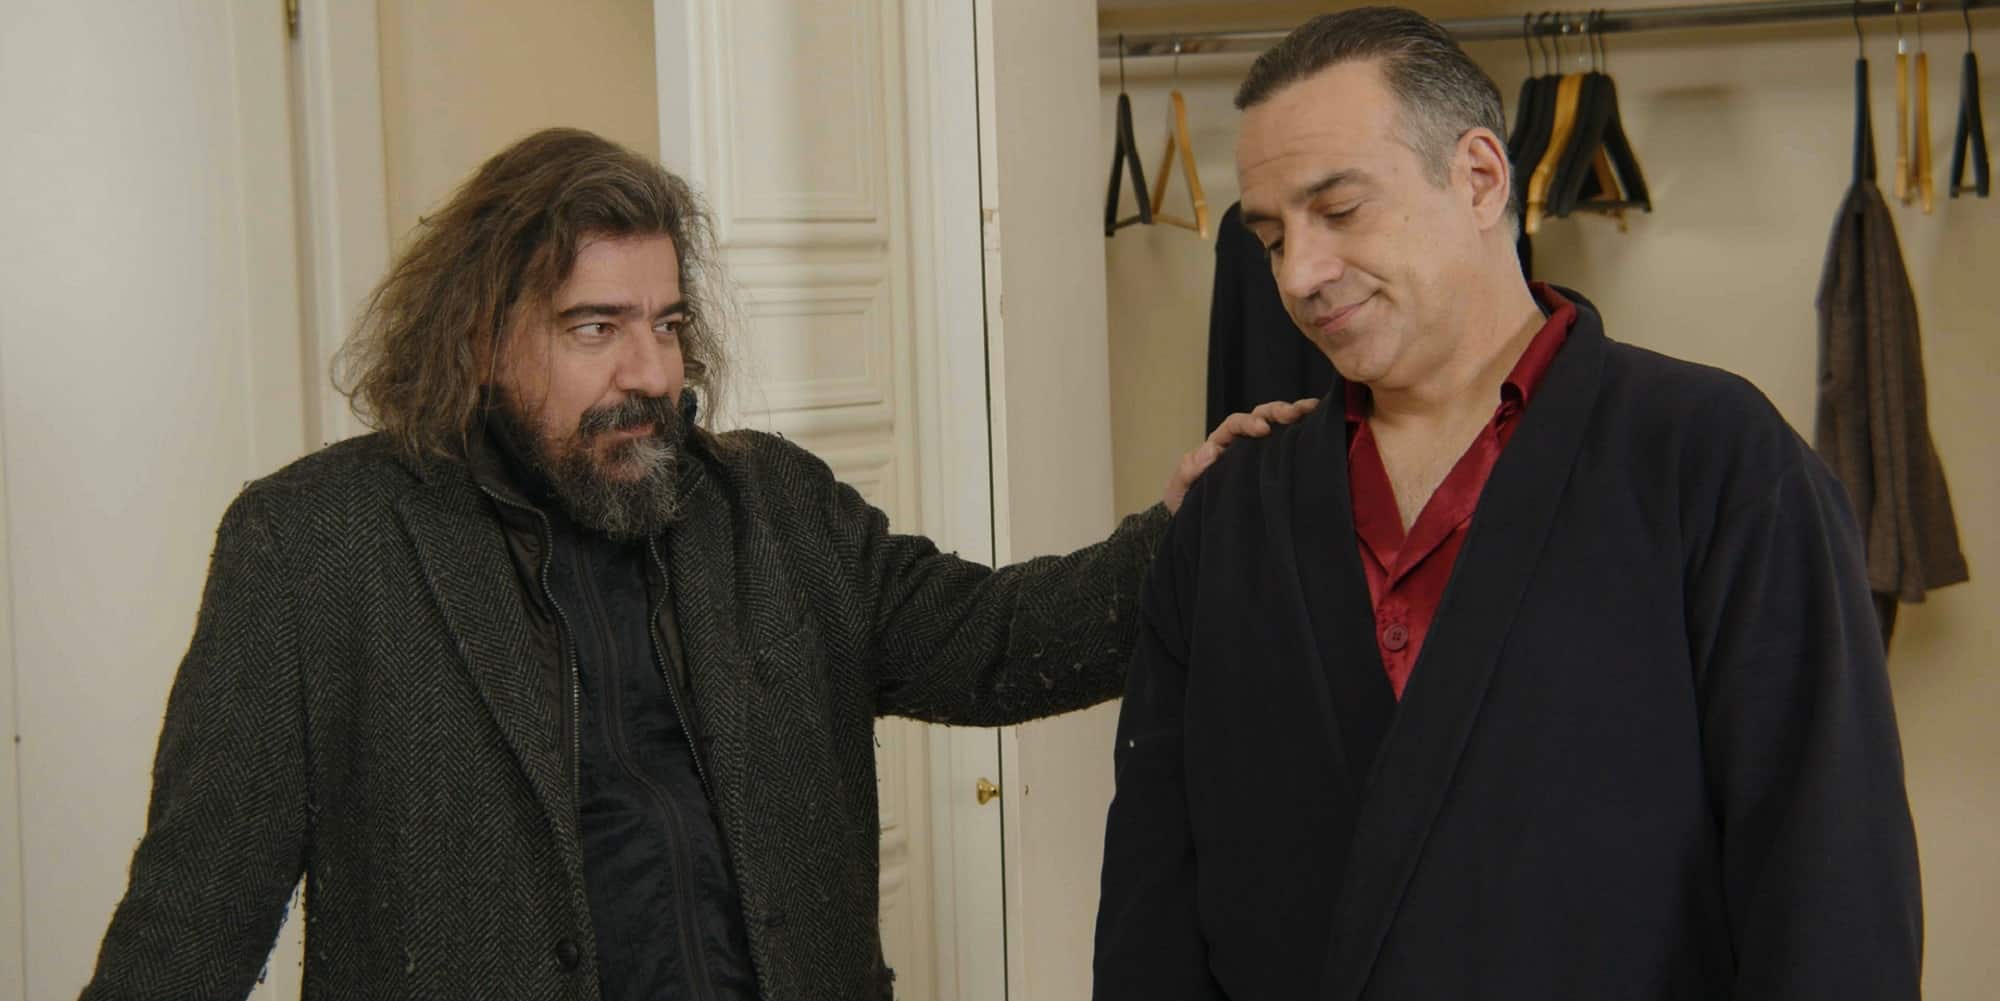 Ο Γιάννης Δρακόπουλος και ο Κρατερός Κατσούλης στη σειρά «Ποιος Παπαδόπουλος;»